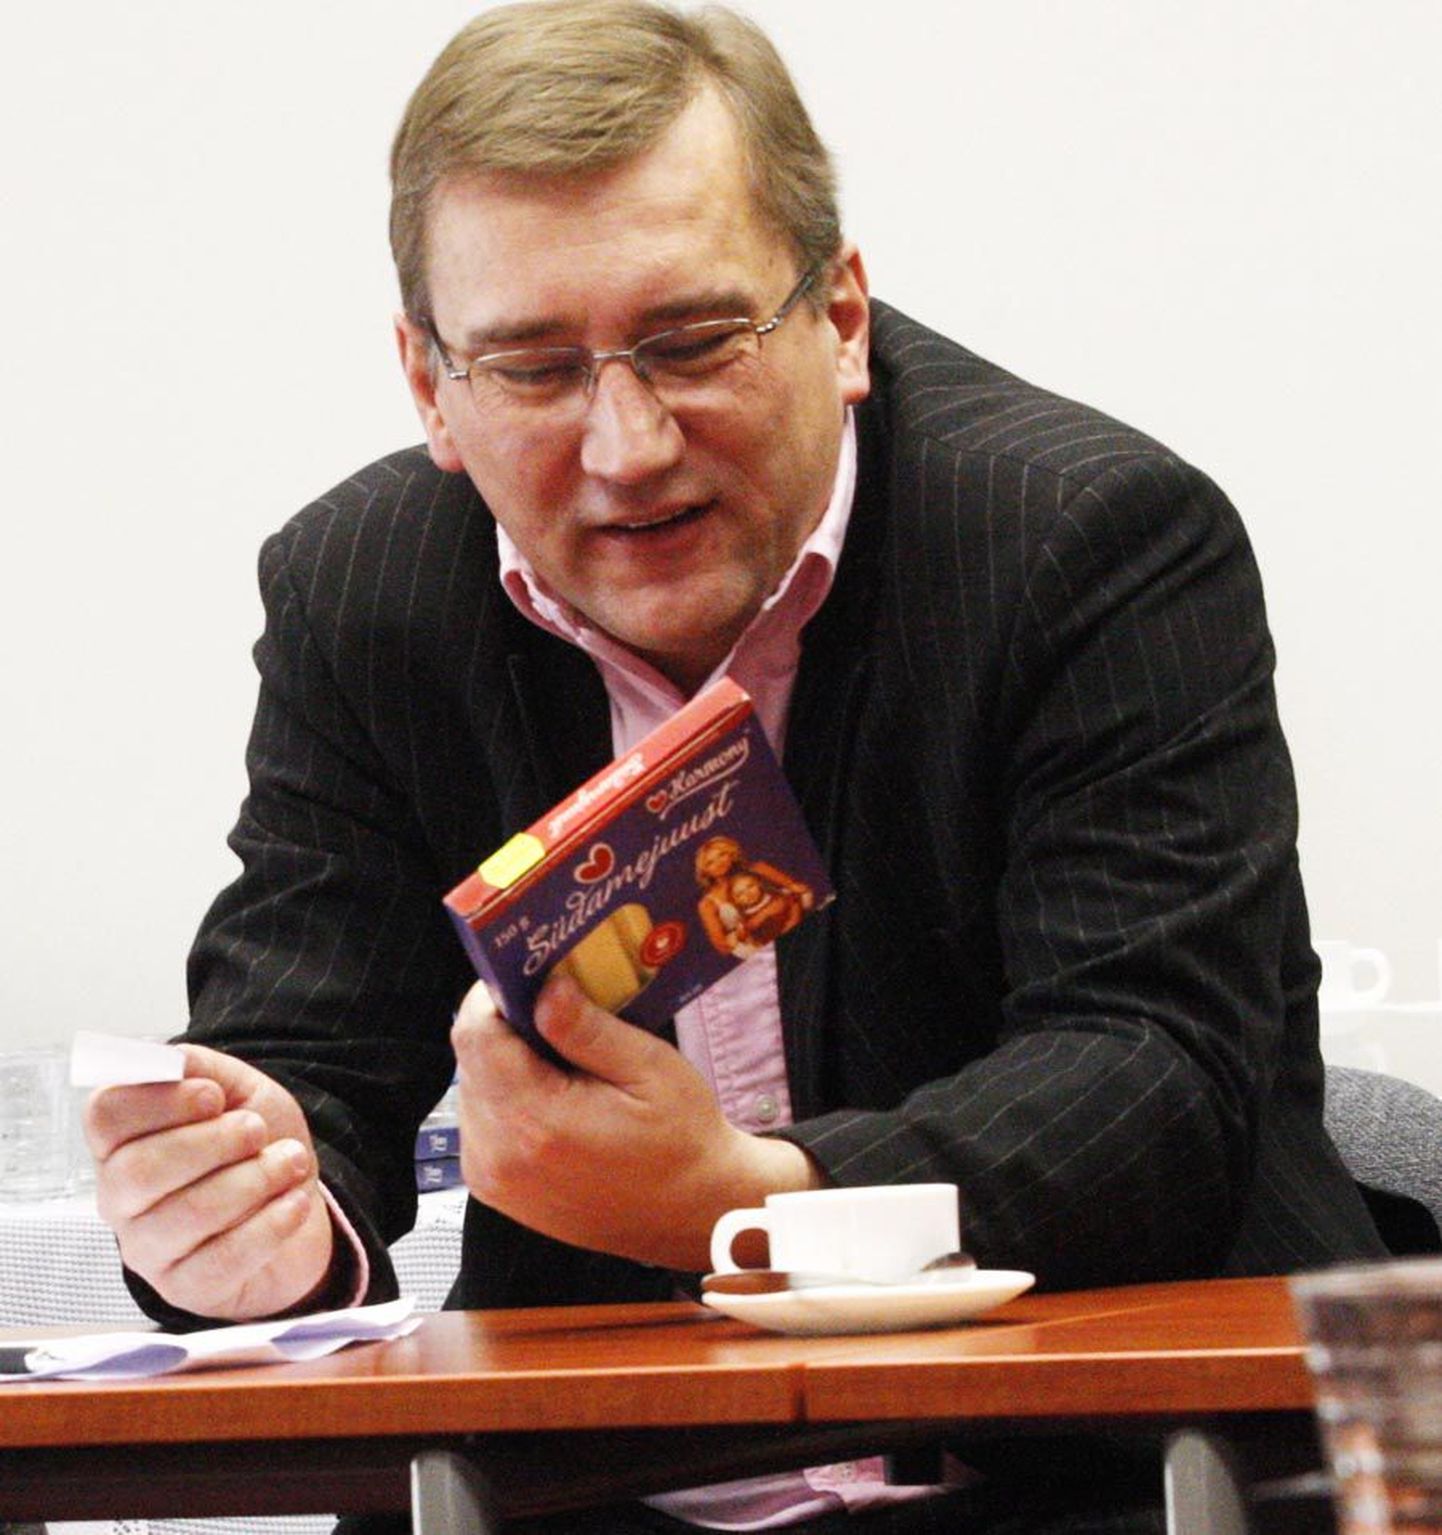 Majandusminister Juhan Parts 2009. aasta detsembris Tartu teaduspargis Südamejuustu pakki imetlemas.